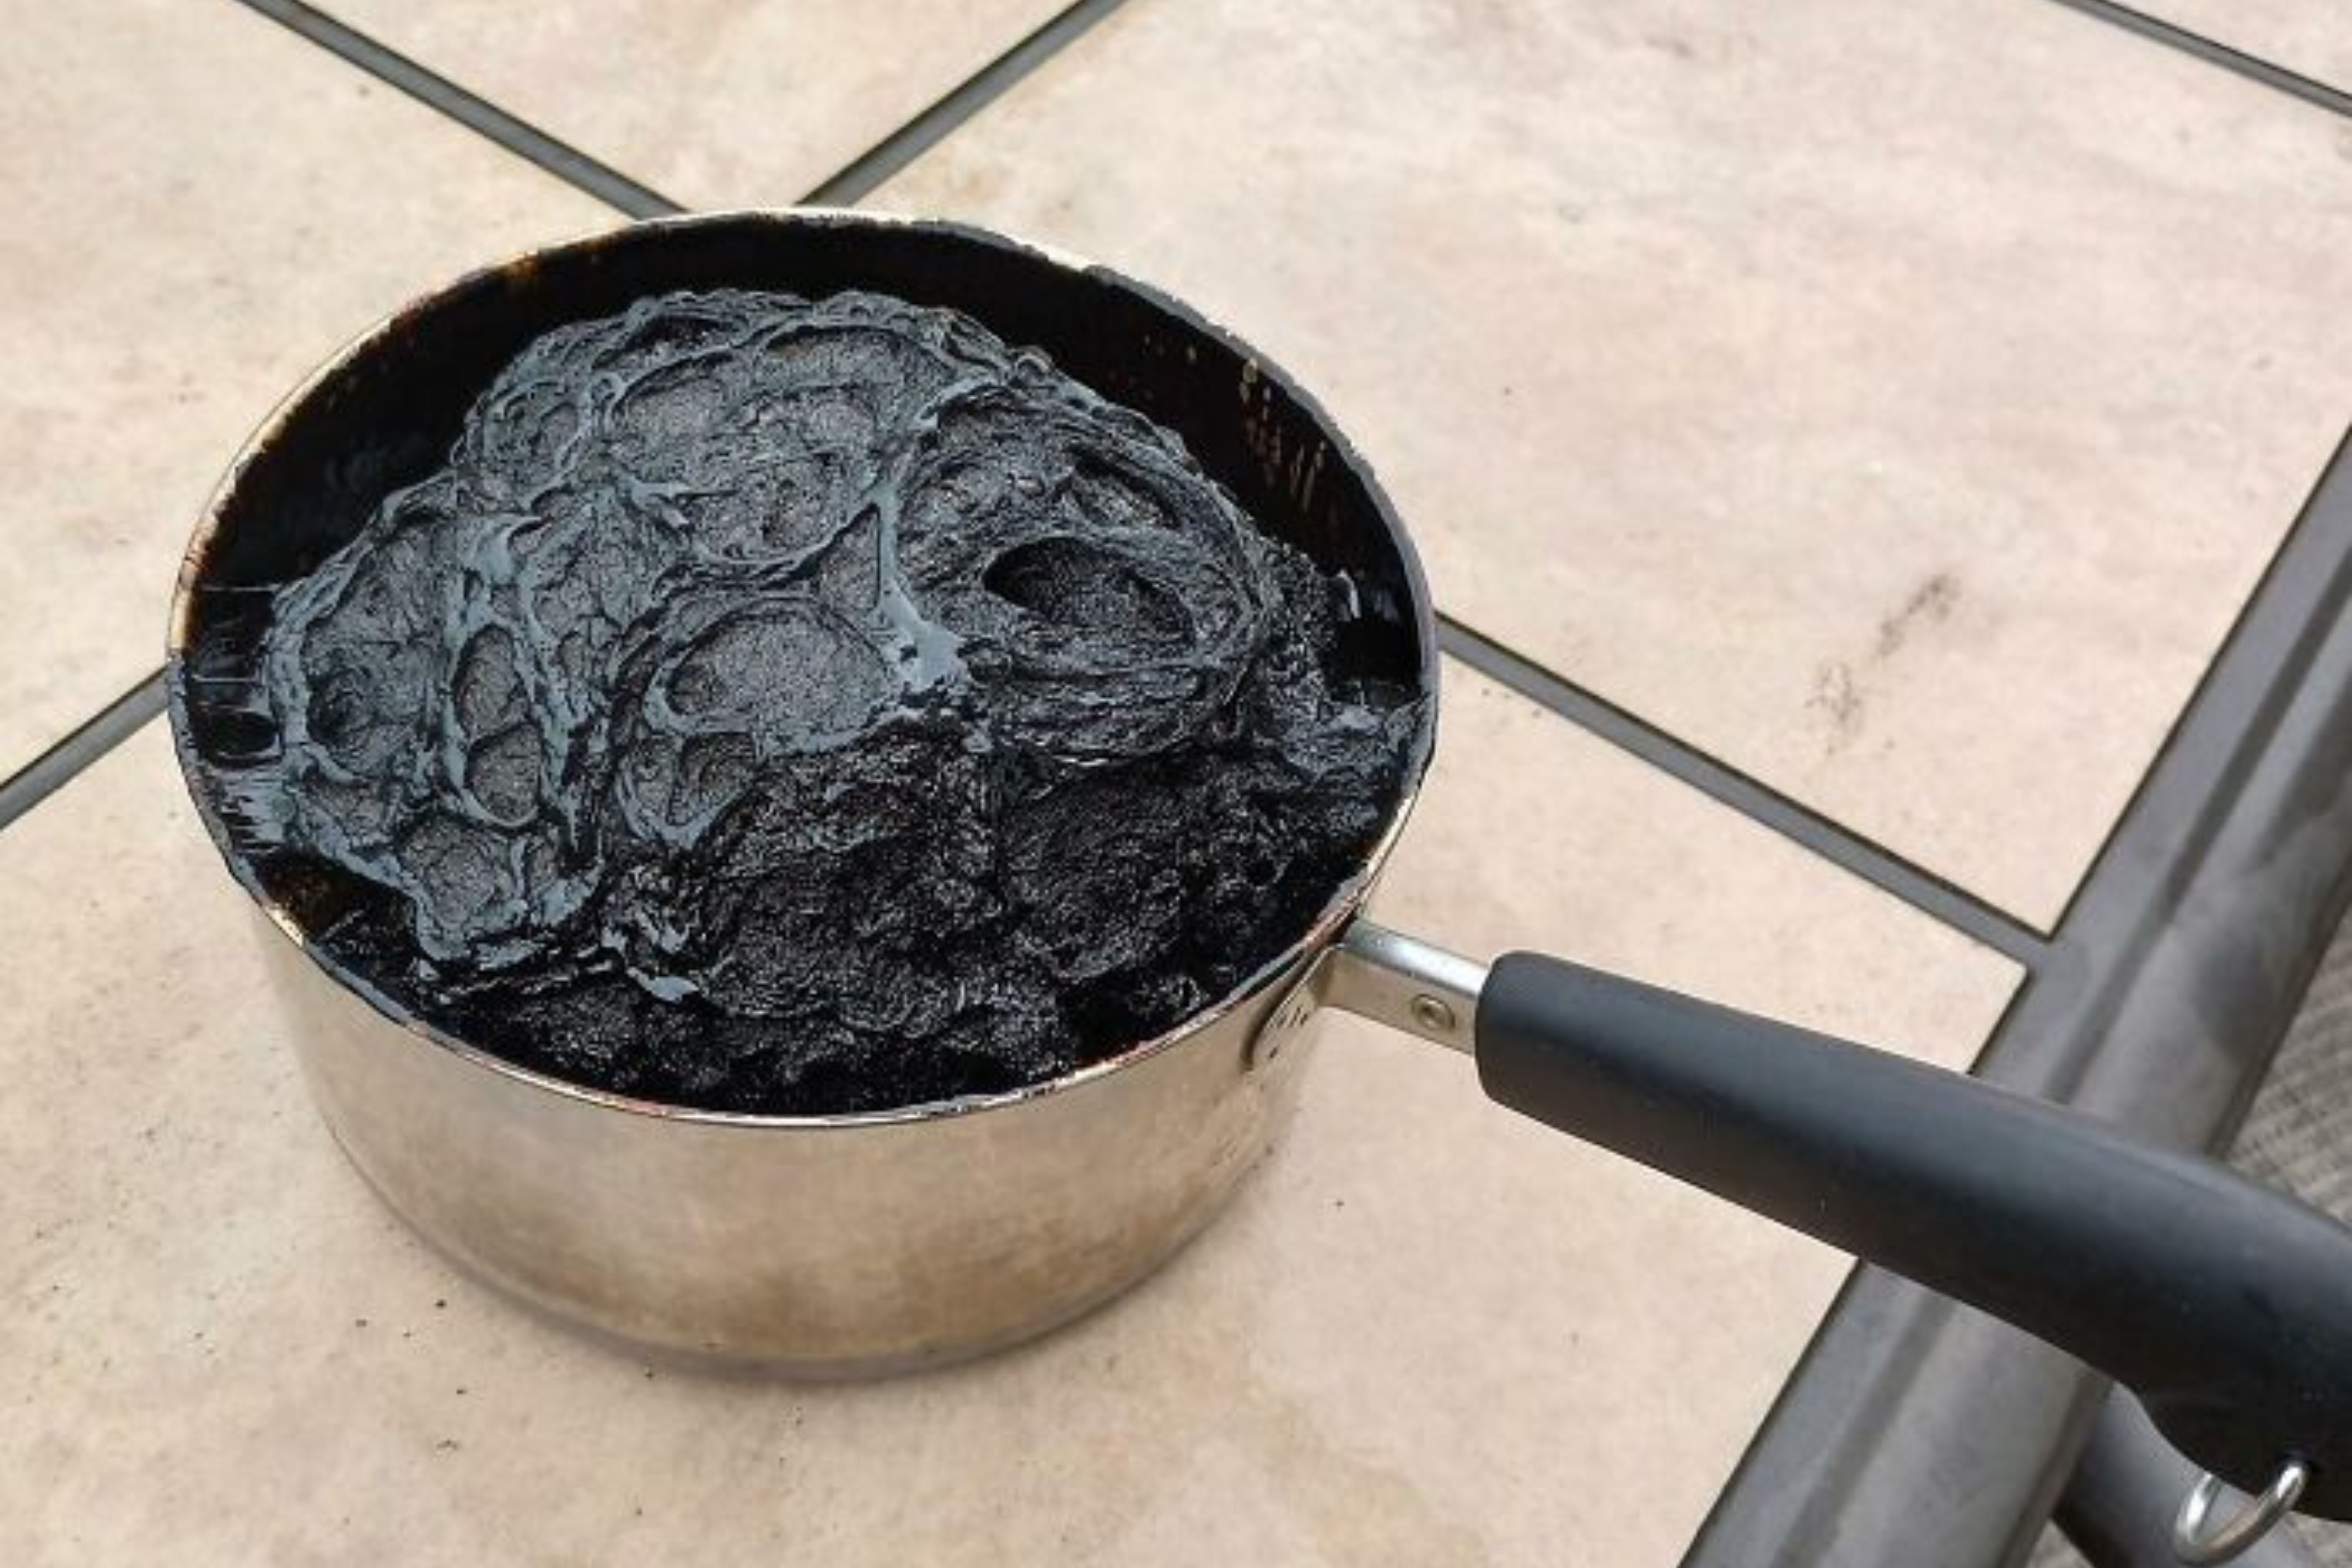 Homem acidentalmente deixou um pote de xarope no fogão e o resultado foi um asteróide (Reprodução)